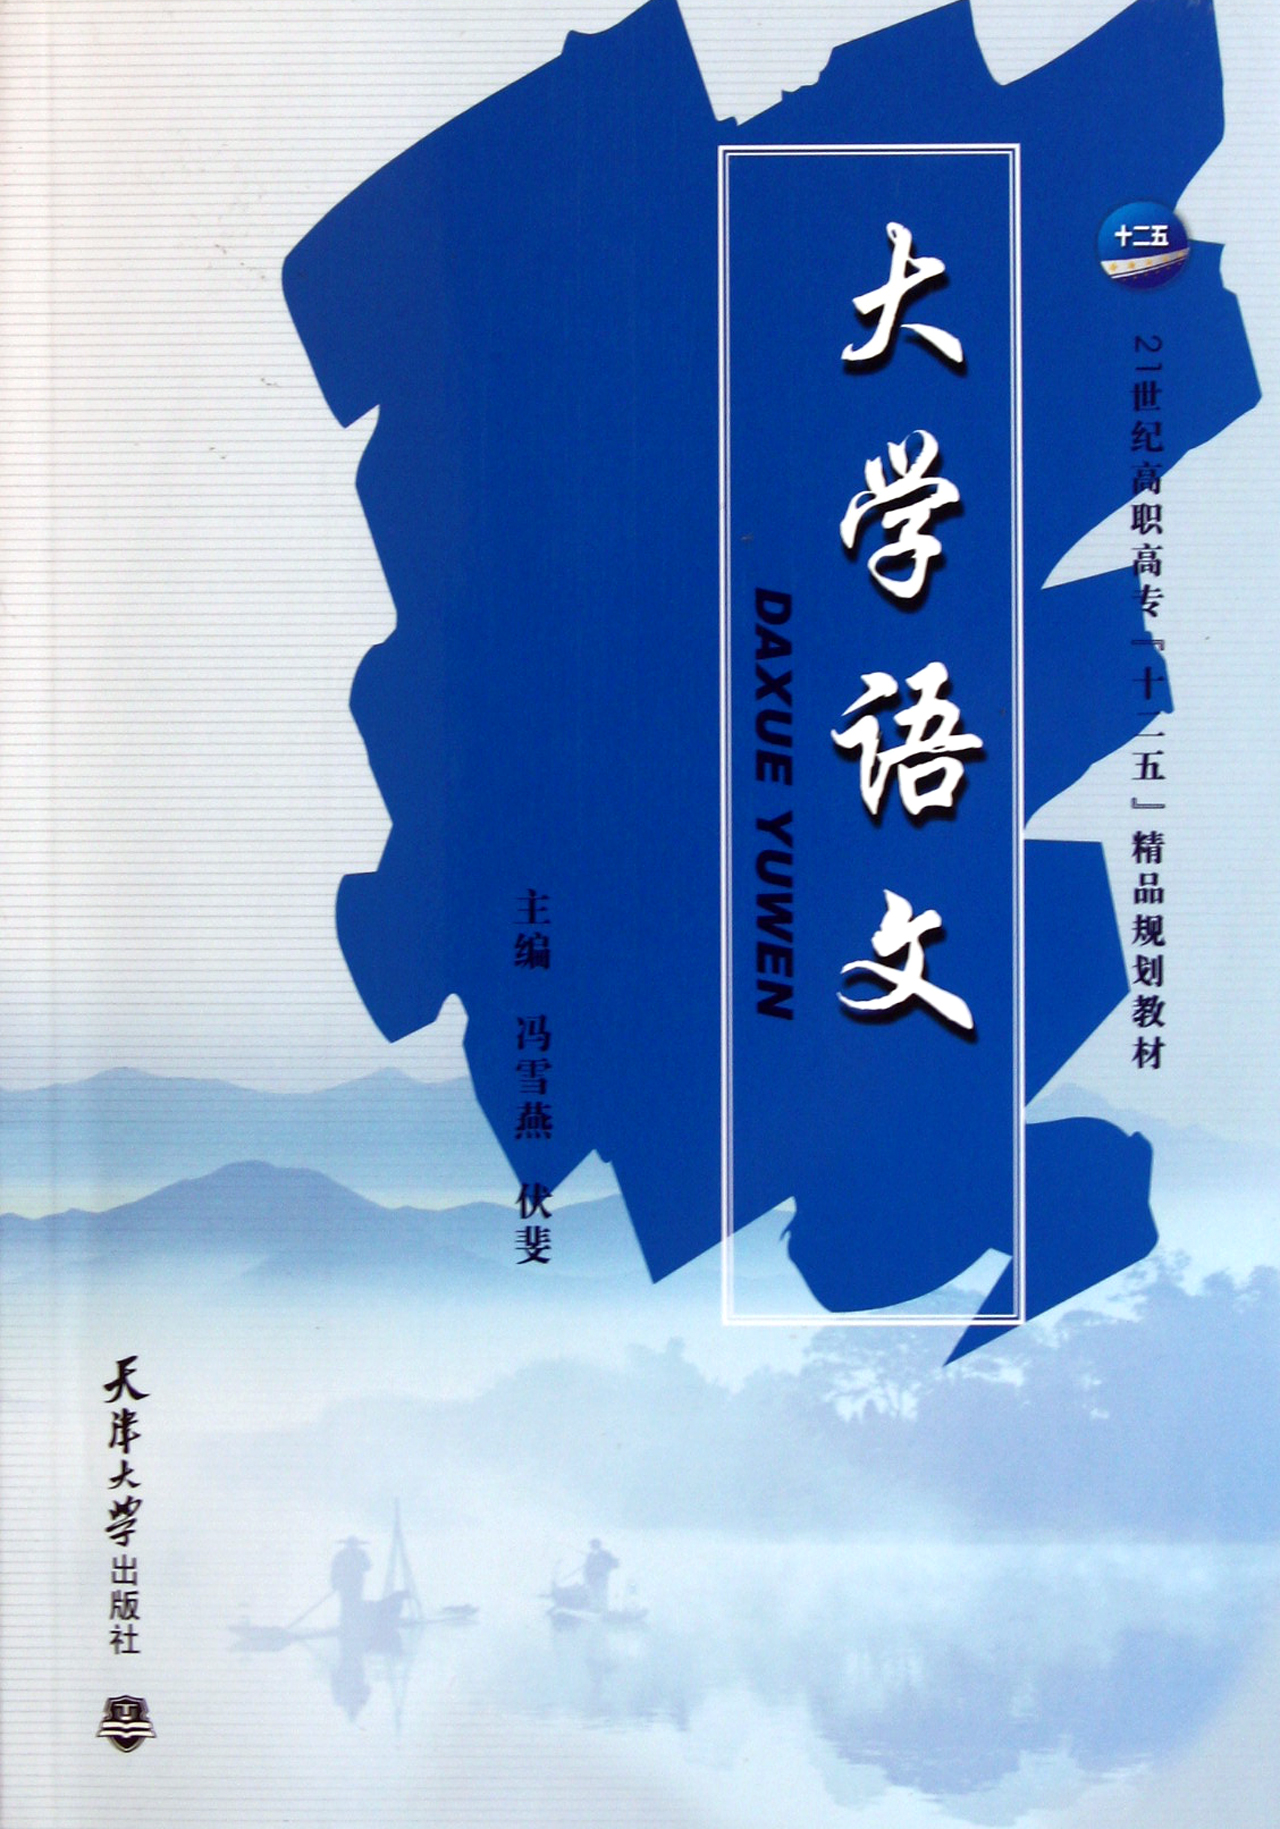 大学语文课本封面图片